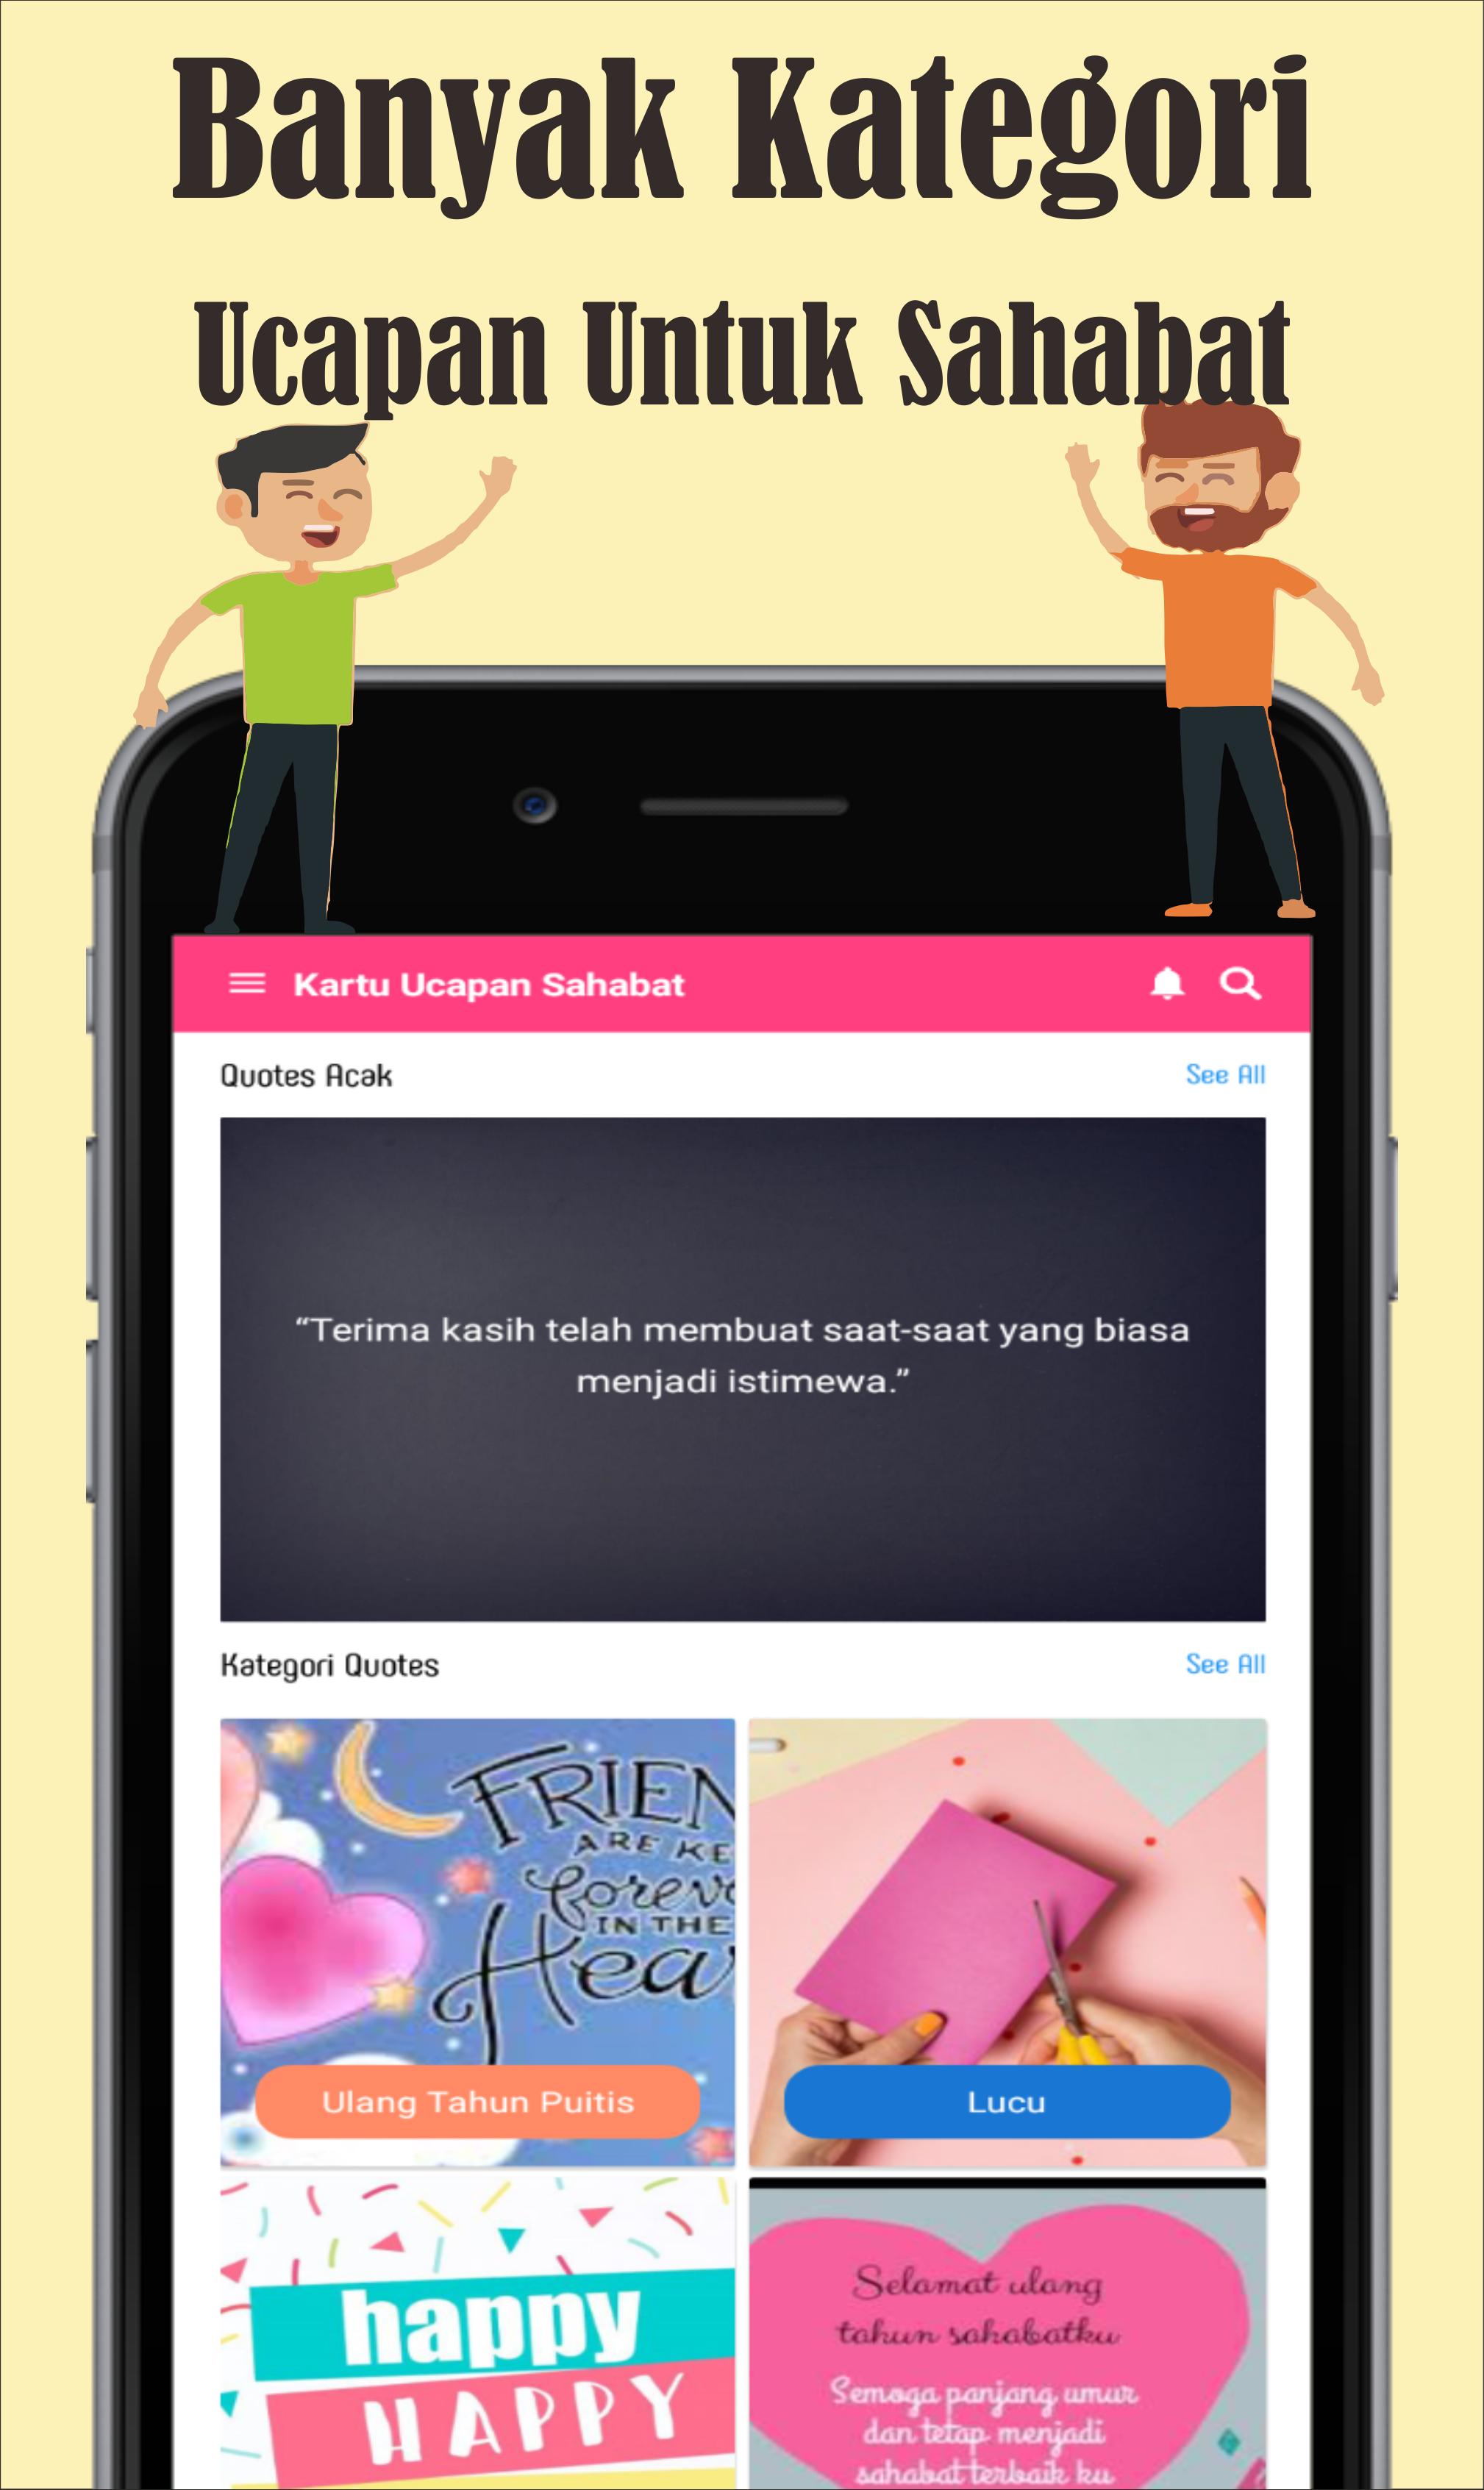 Kata Kata Bijak Persahabatan 2019 For Android Apk Download